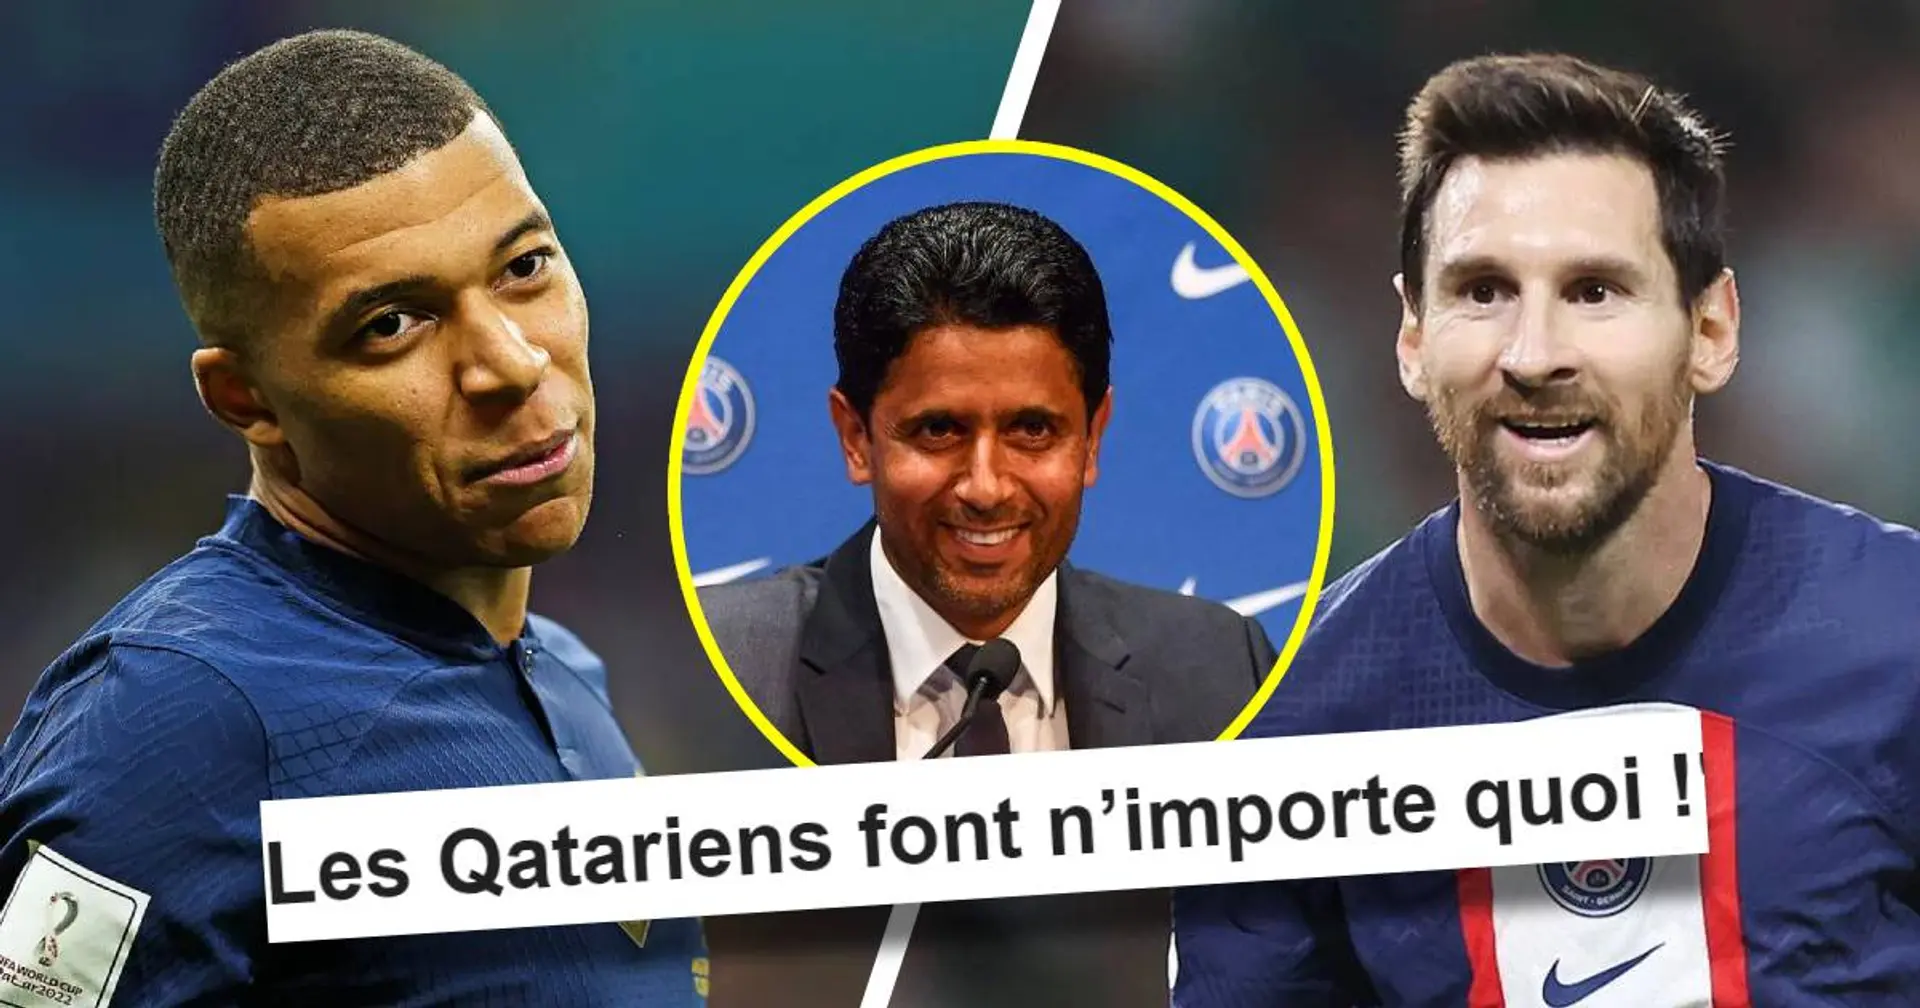 "Les Qatariens font n’importe quoi !" : Un fan regrette la potentielle prolongation de Messi - cela concerne Mbappé